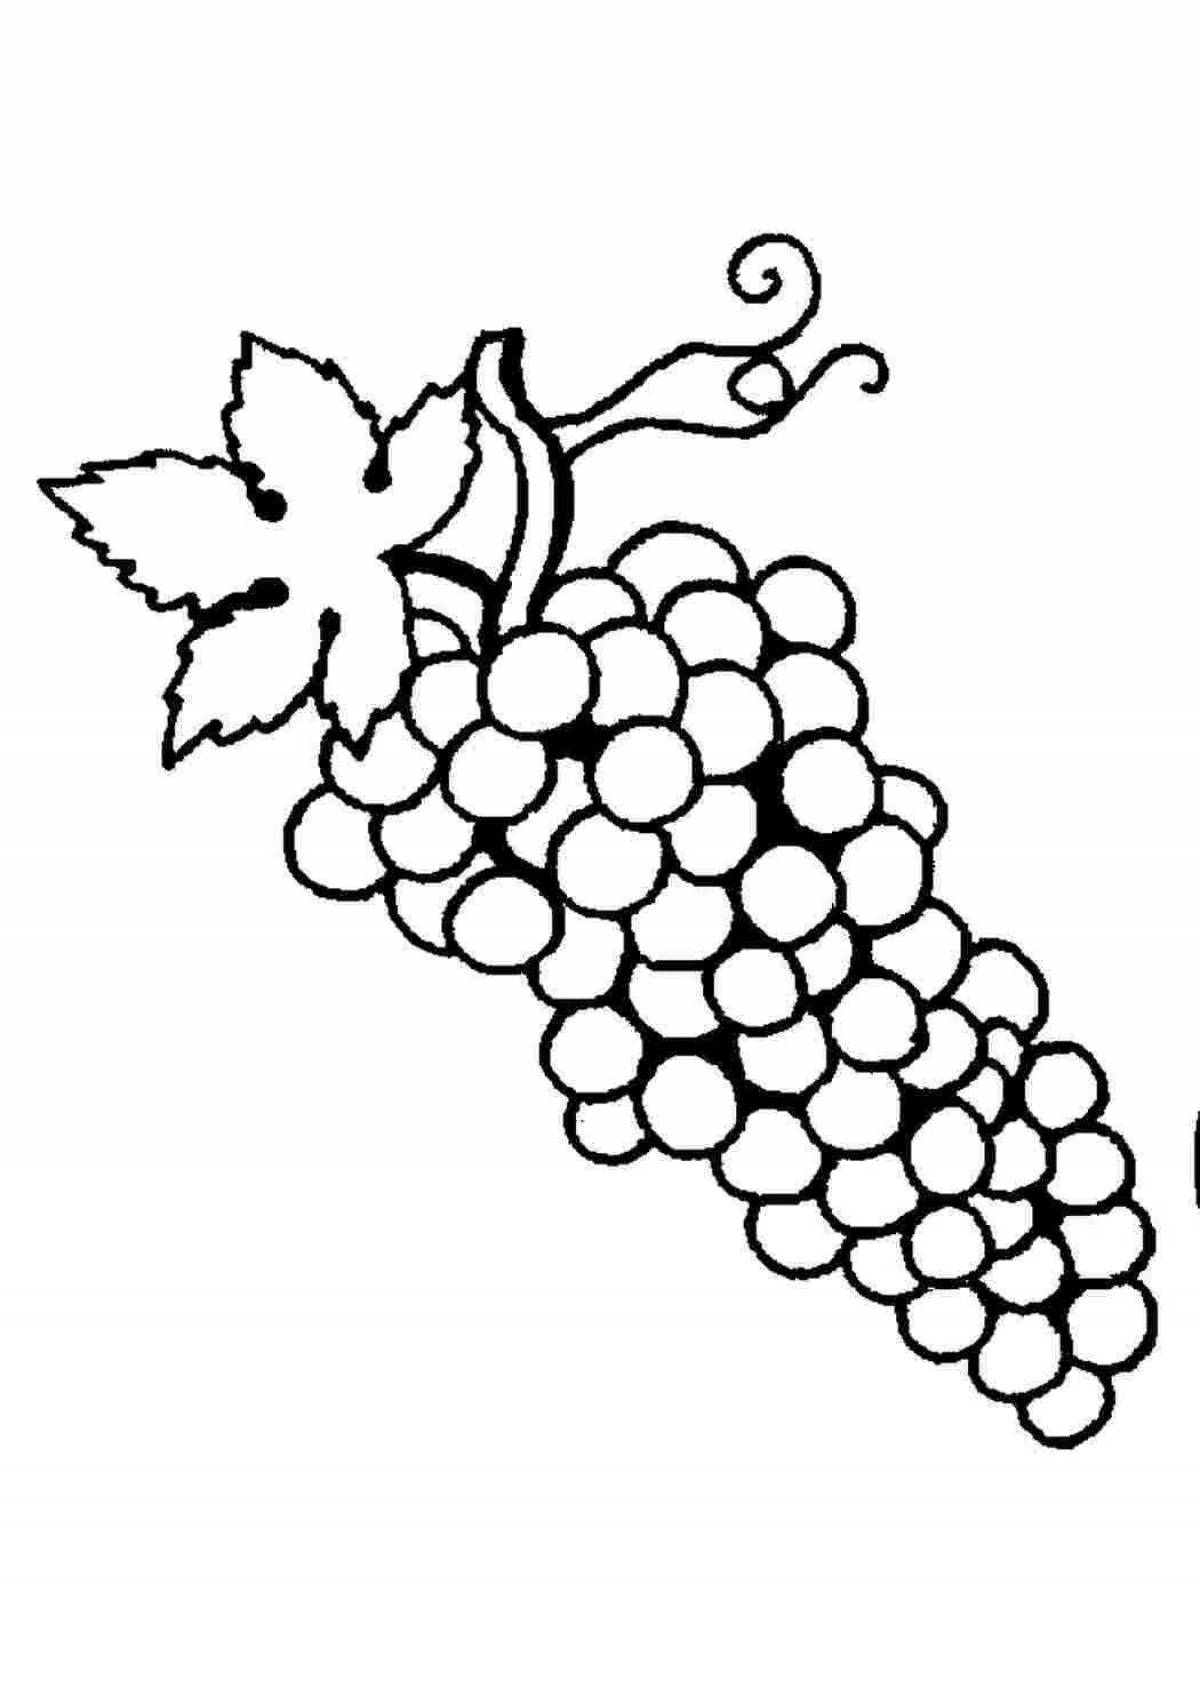 Раскраска для детей фрукты виноград